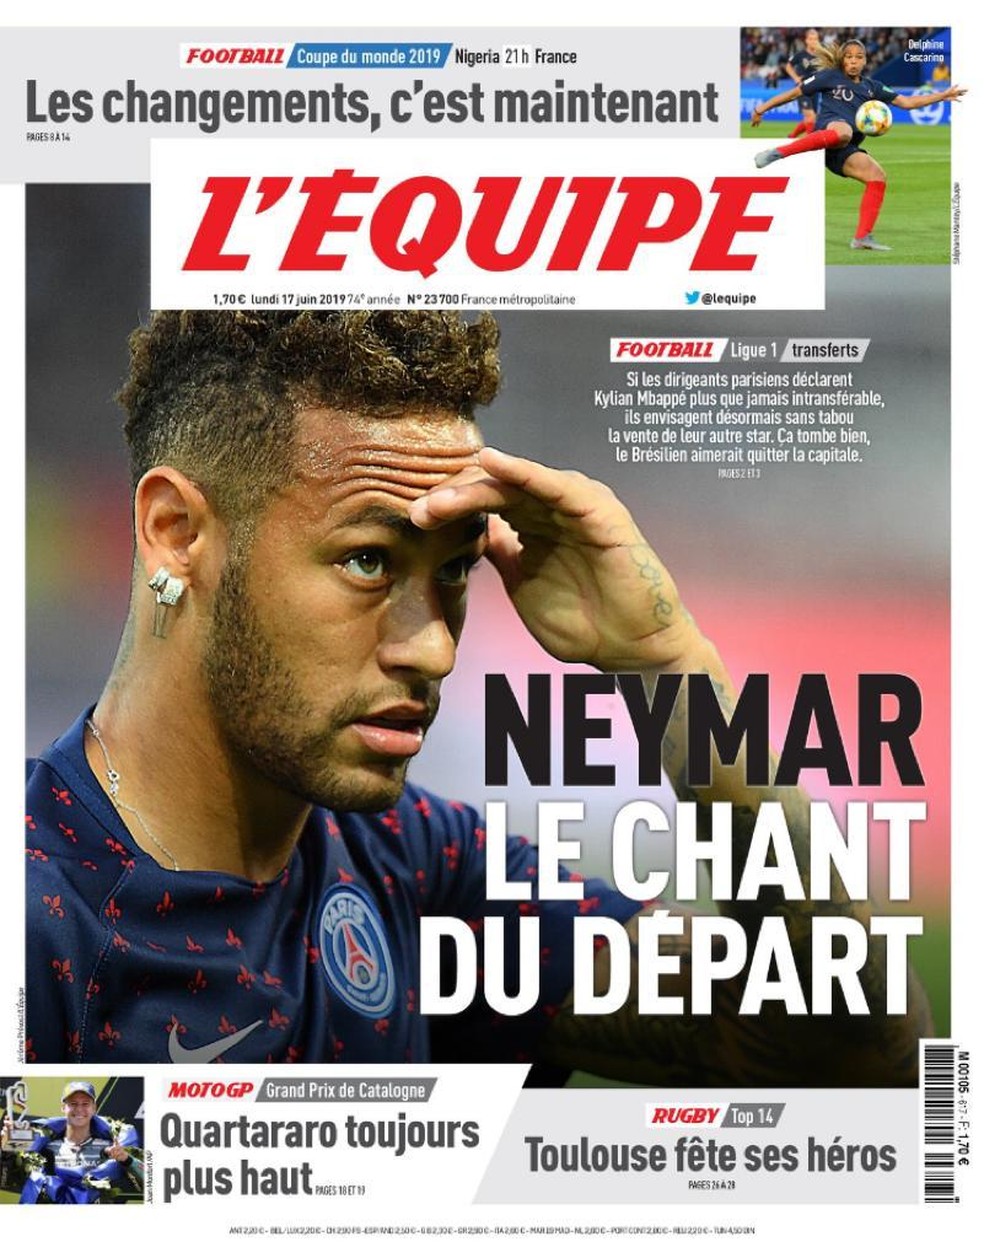 Neymar tambÃ©m vem sendo destaque na imprensa francesa â€” Foto: ReproduÃ§Ã£o/L'Equipe